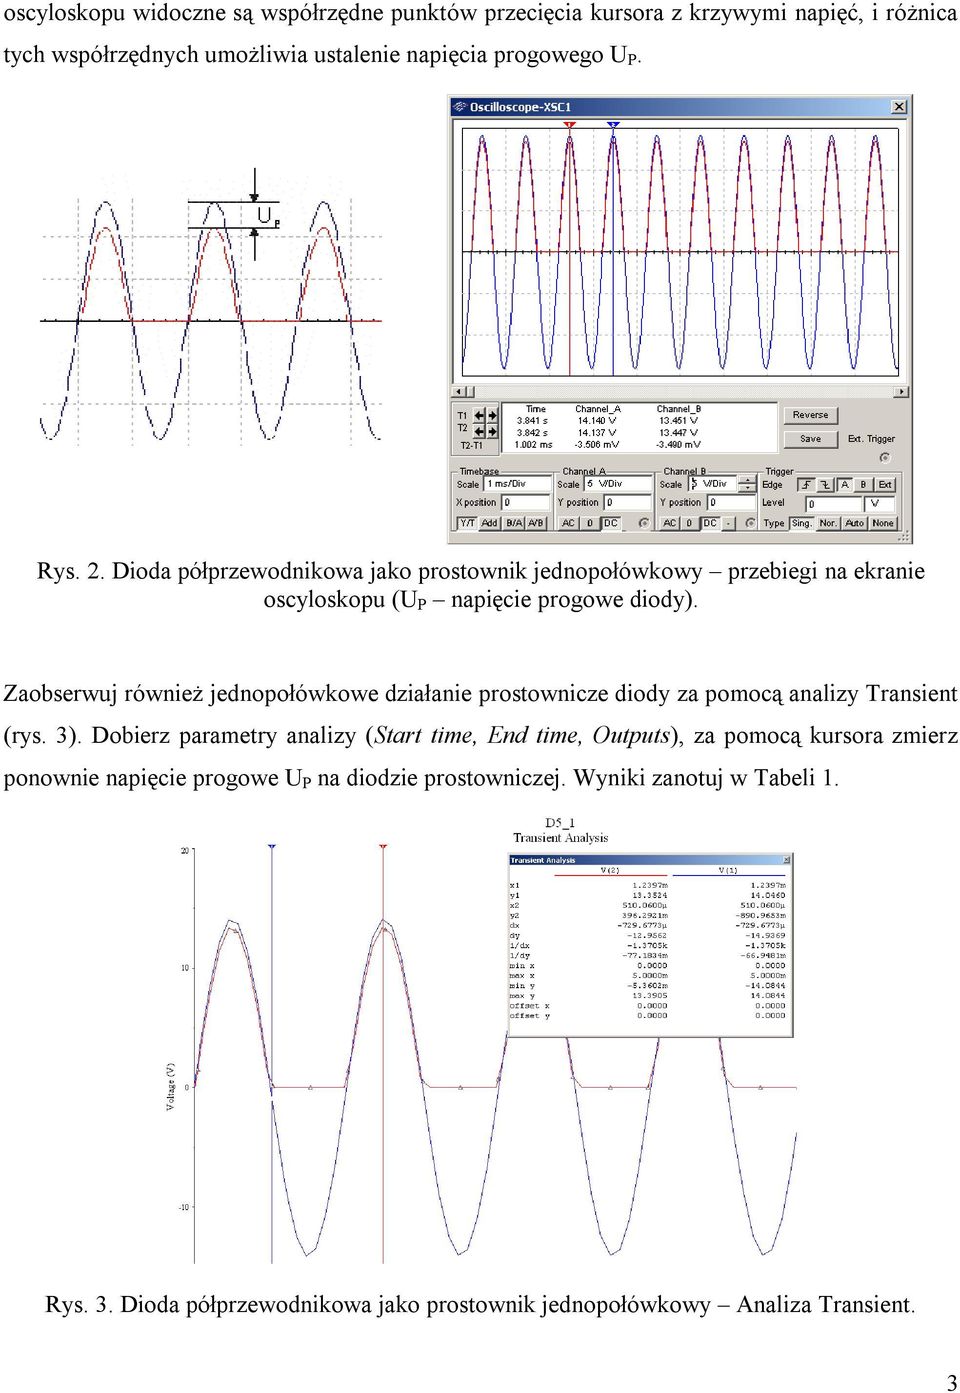 Zaobserwuj również jednopołówkowe działanie prostownicze diody za pomocą analizy Transient (rys. 3).